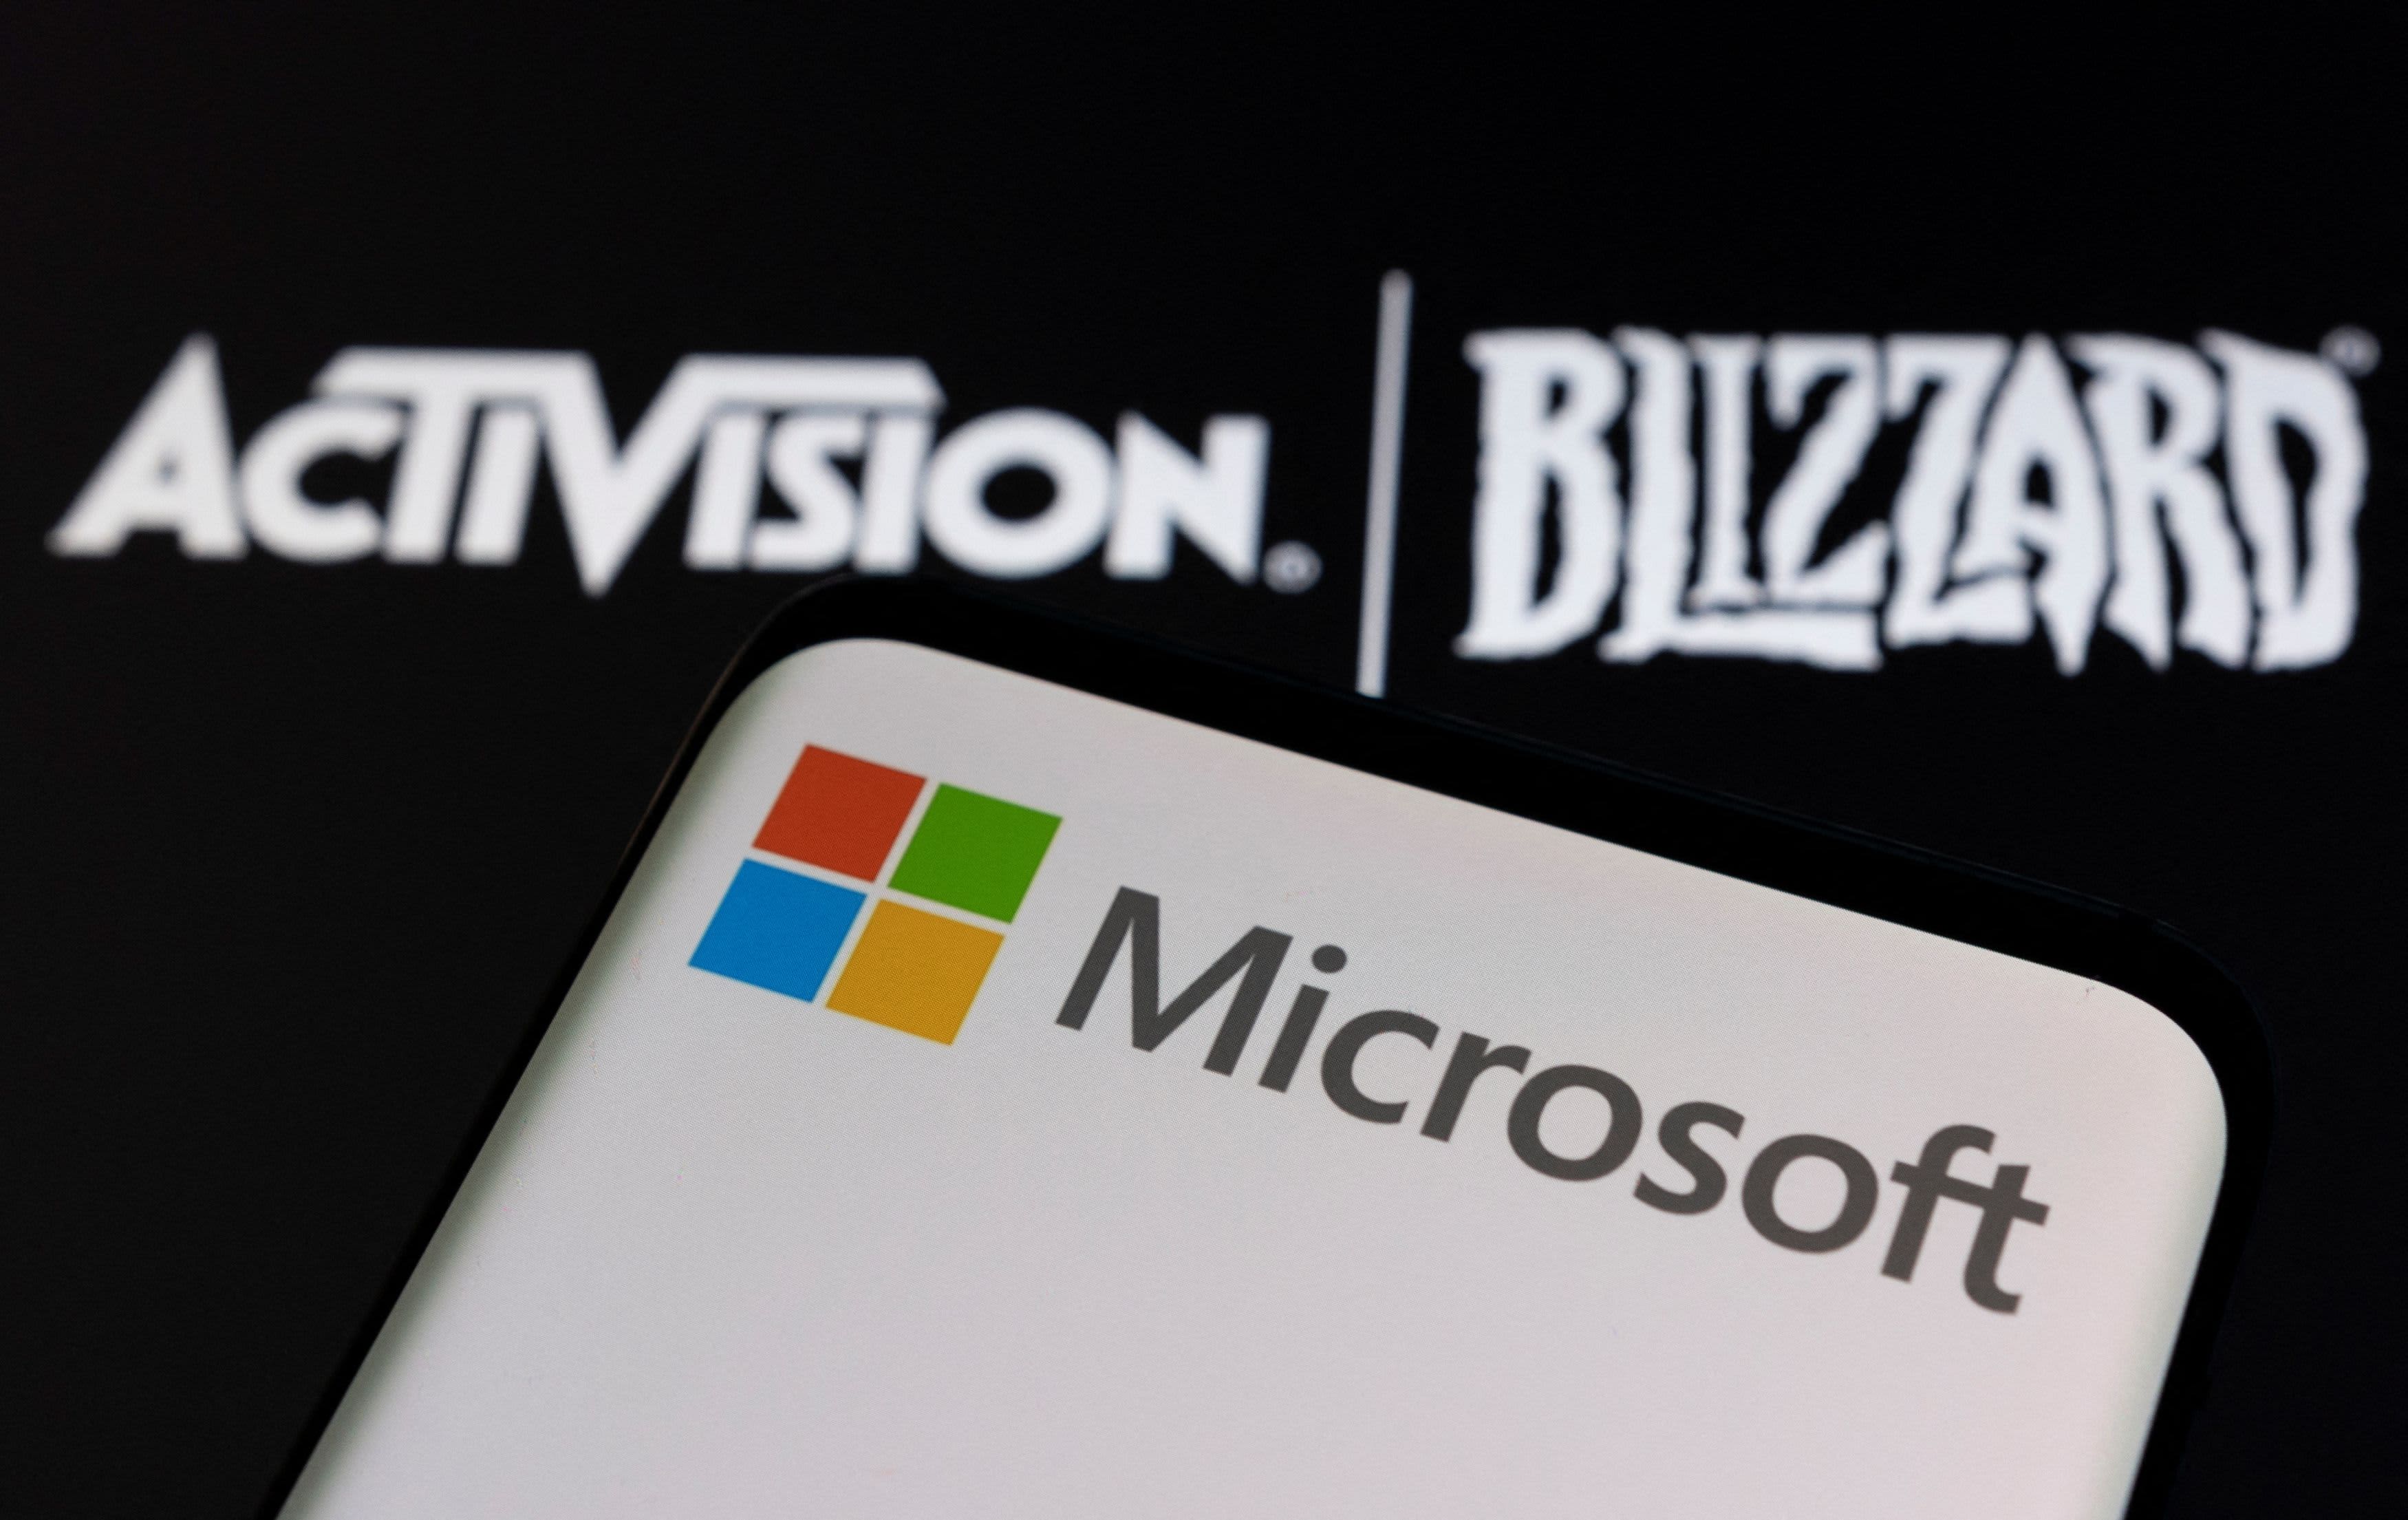 La adquisición de Microsoft-Activision Blizzard ha sido aprobada por el organismo regulador británico CMA